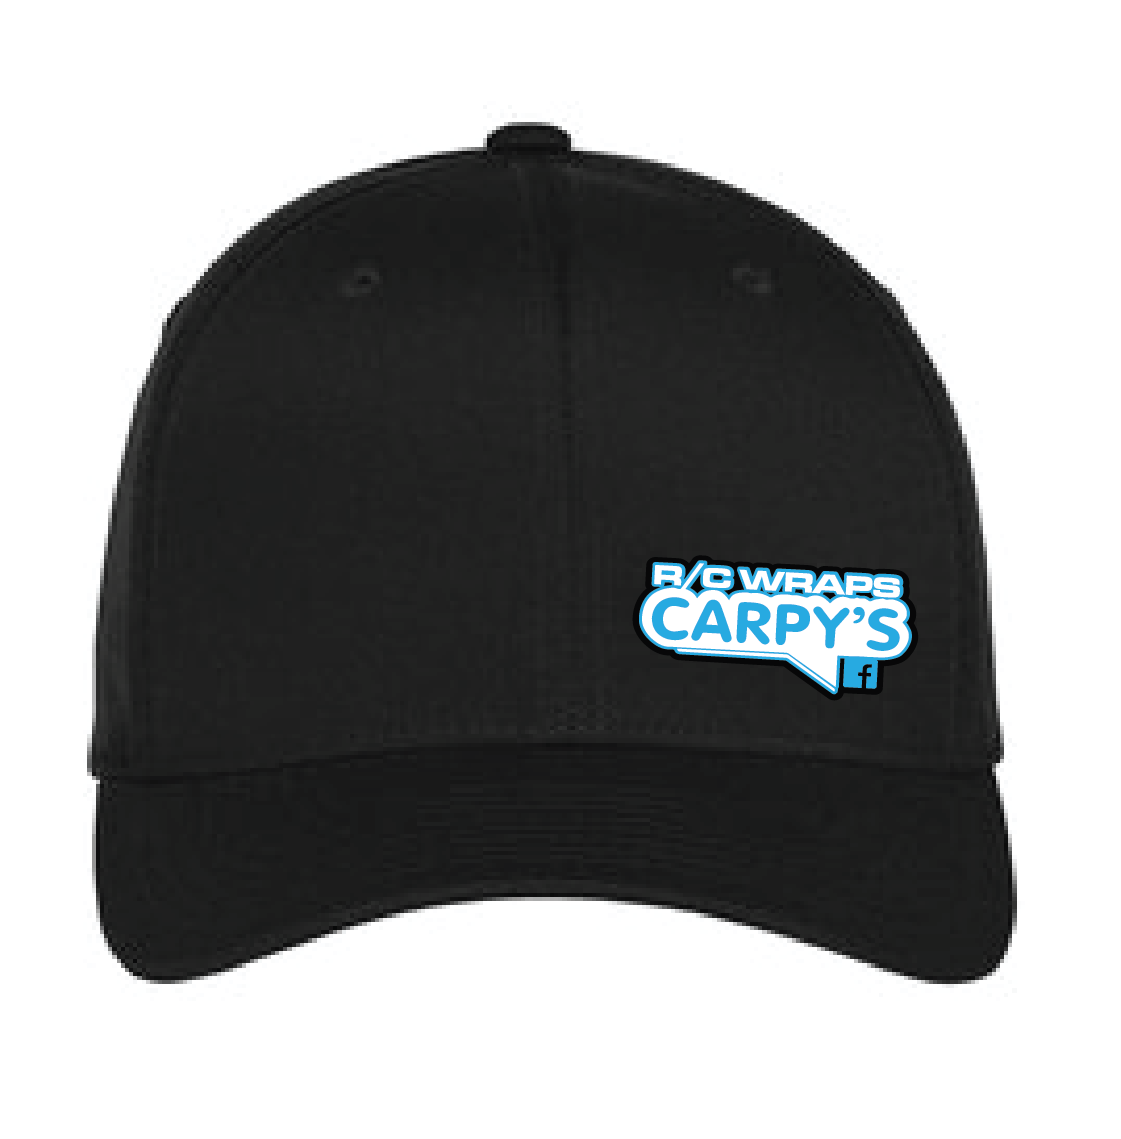 Carpy's R/C Wraps Embroidered Flexfit Hat